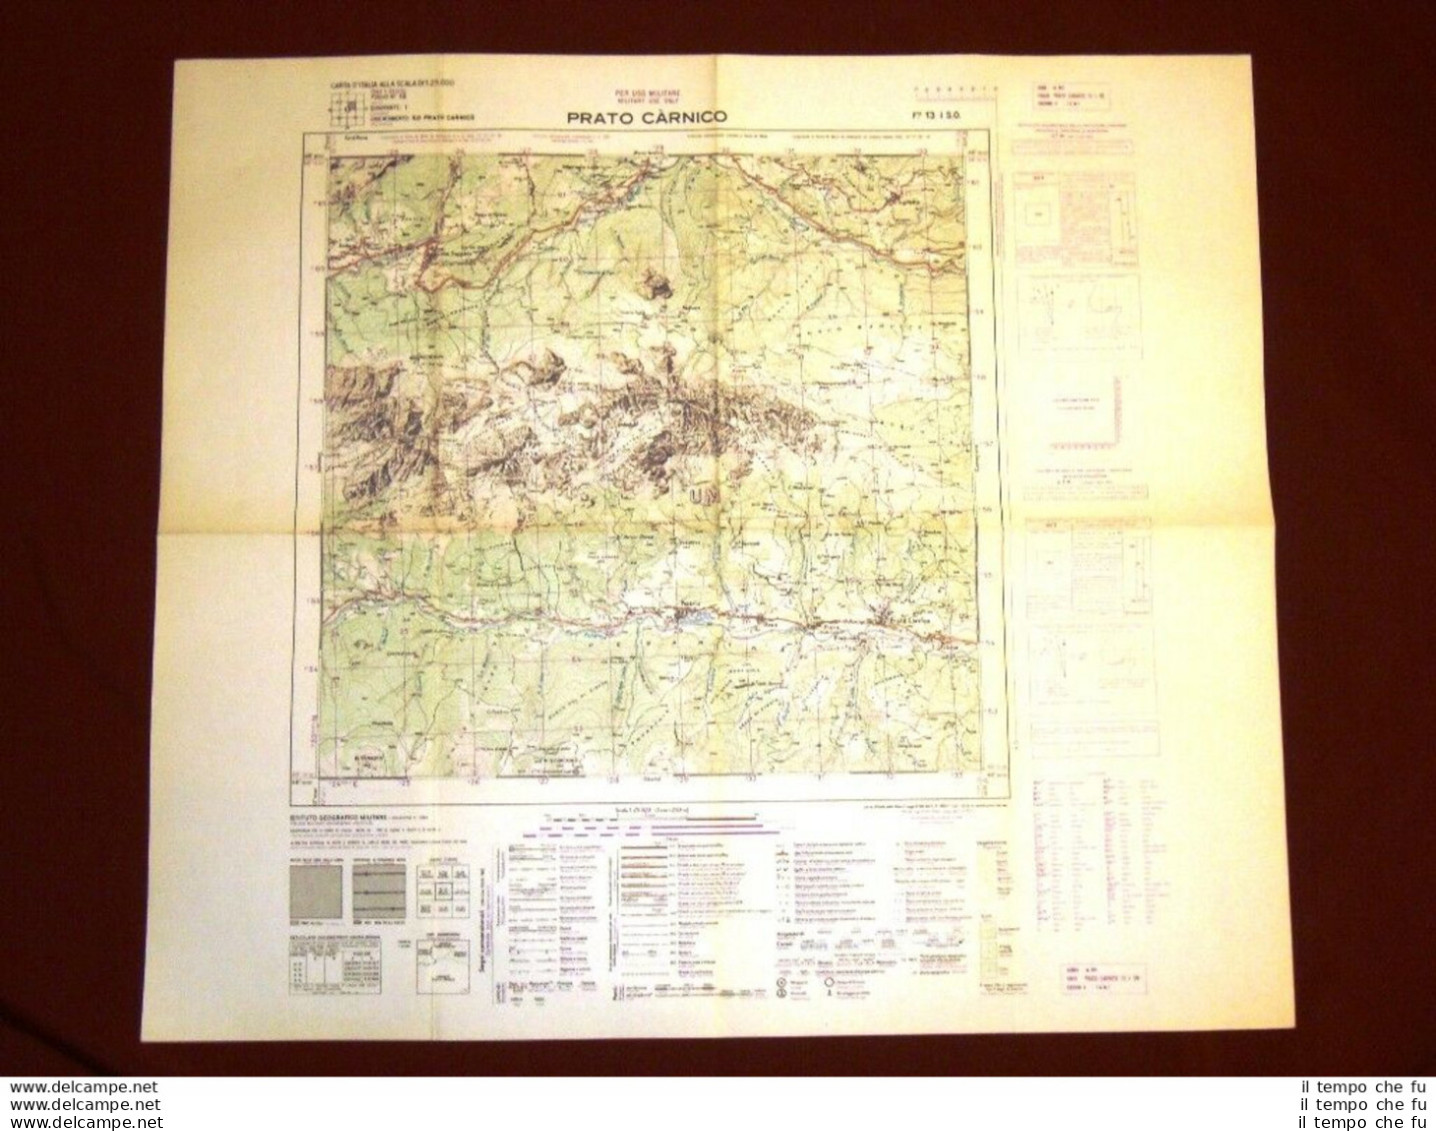 Grande Carta Topografica Prato Carnico Udine Friuli Dettagliatissima I.G.M. - Landkarten